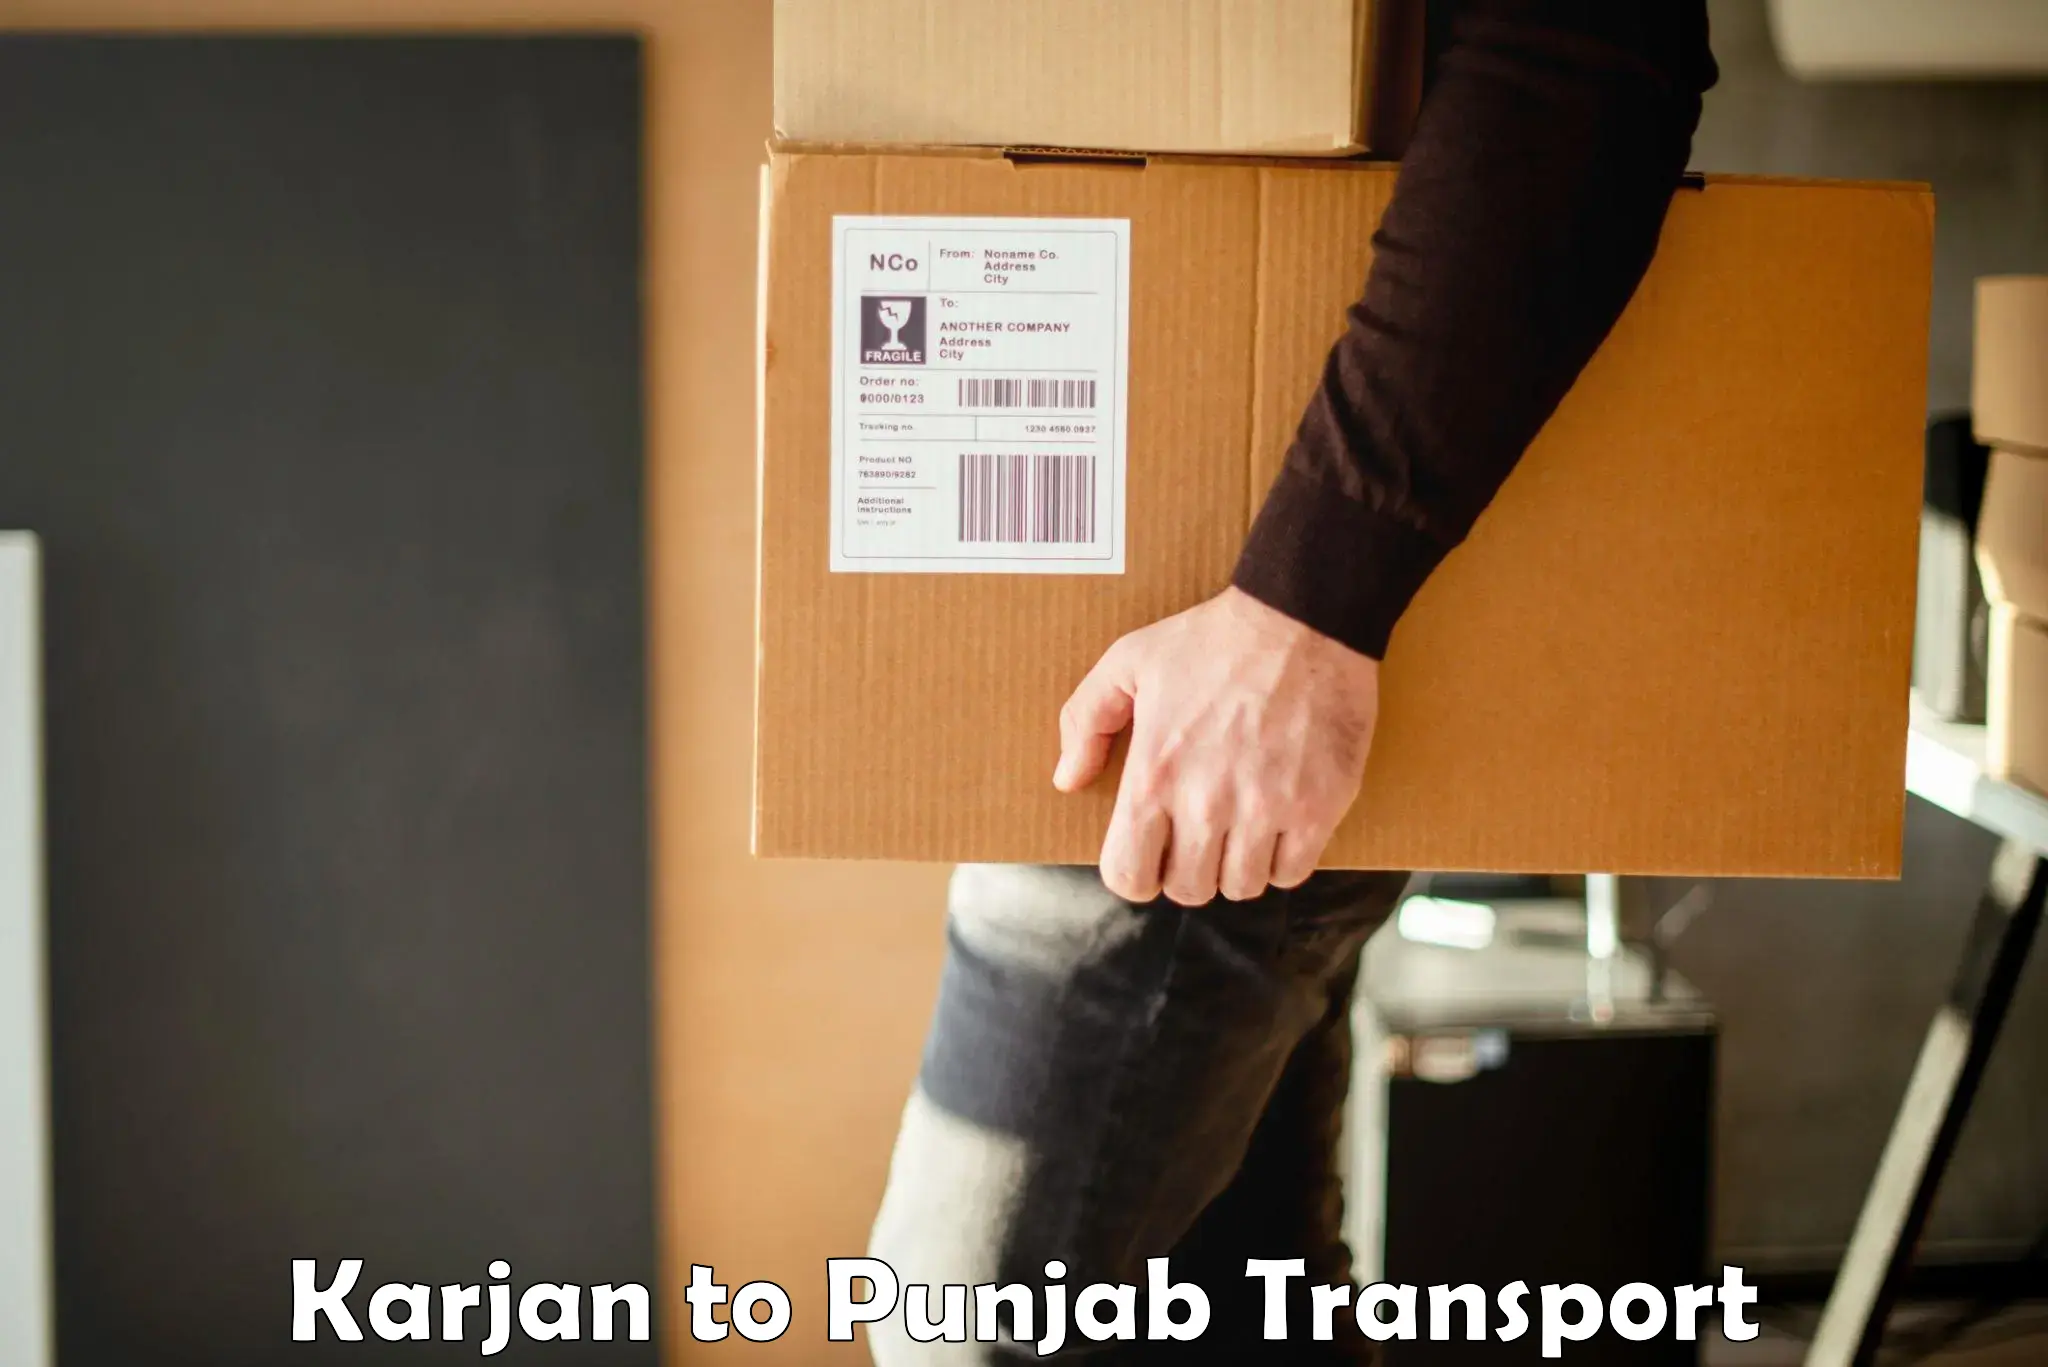 Container transport service Karjan to Punjab